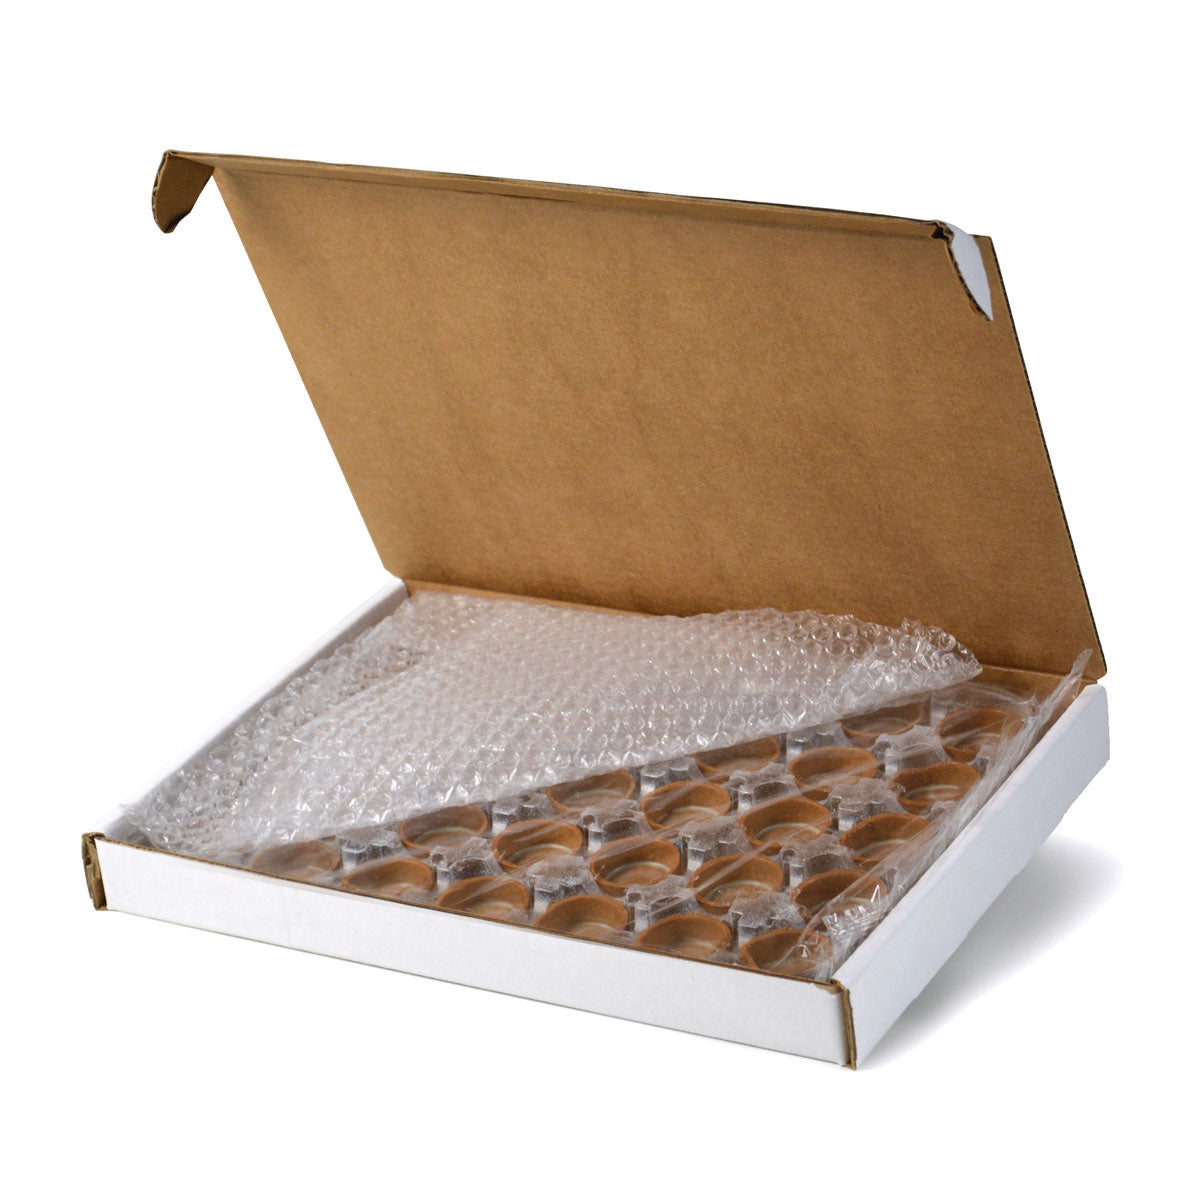 Mini round chocolate tart inside box packaging